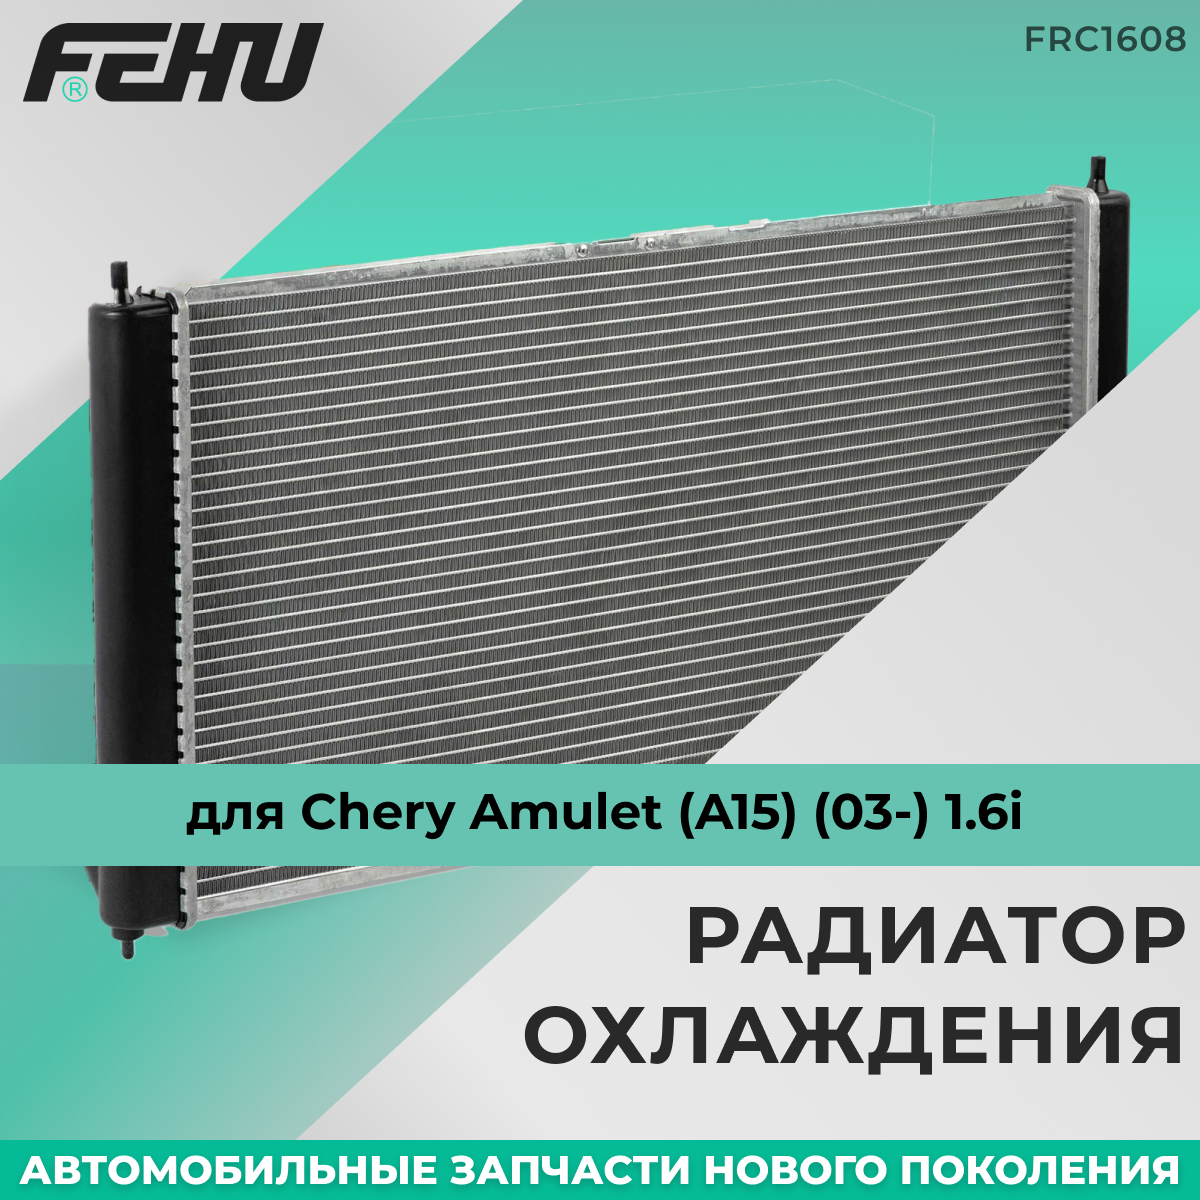 Радиатор охлаждения FEHU (феху) Chery Amulet (A15) (03-) 1.6i, FRC1608